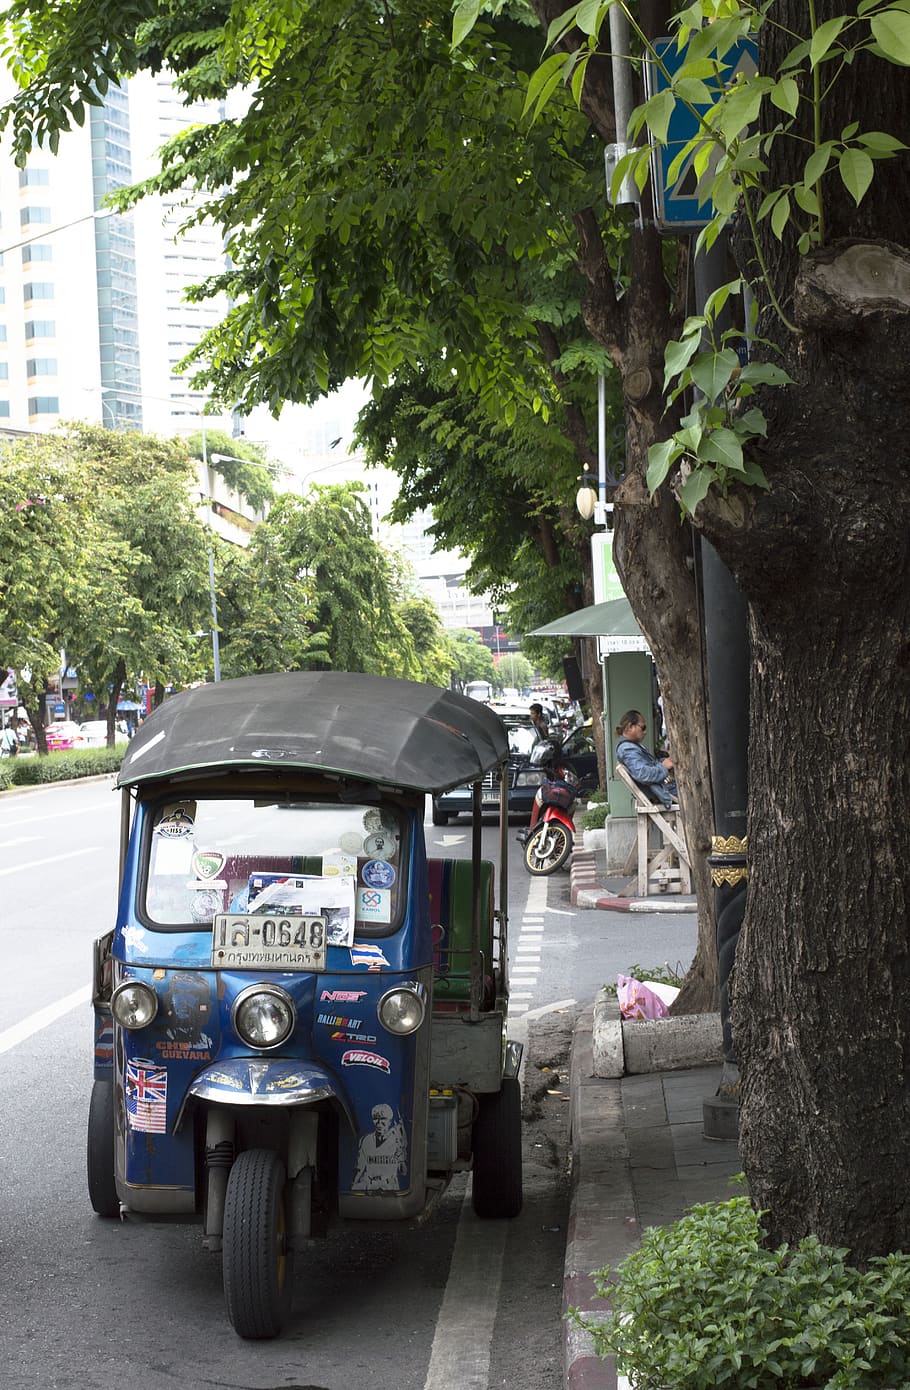 thailand, bangkok, sathon, tuktuk, motor-tricycle, tree, mode of transportation, HD wallpaper